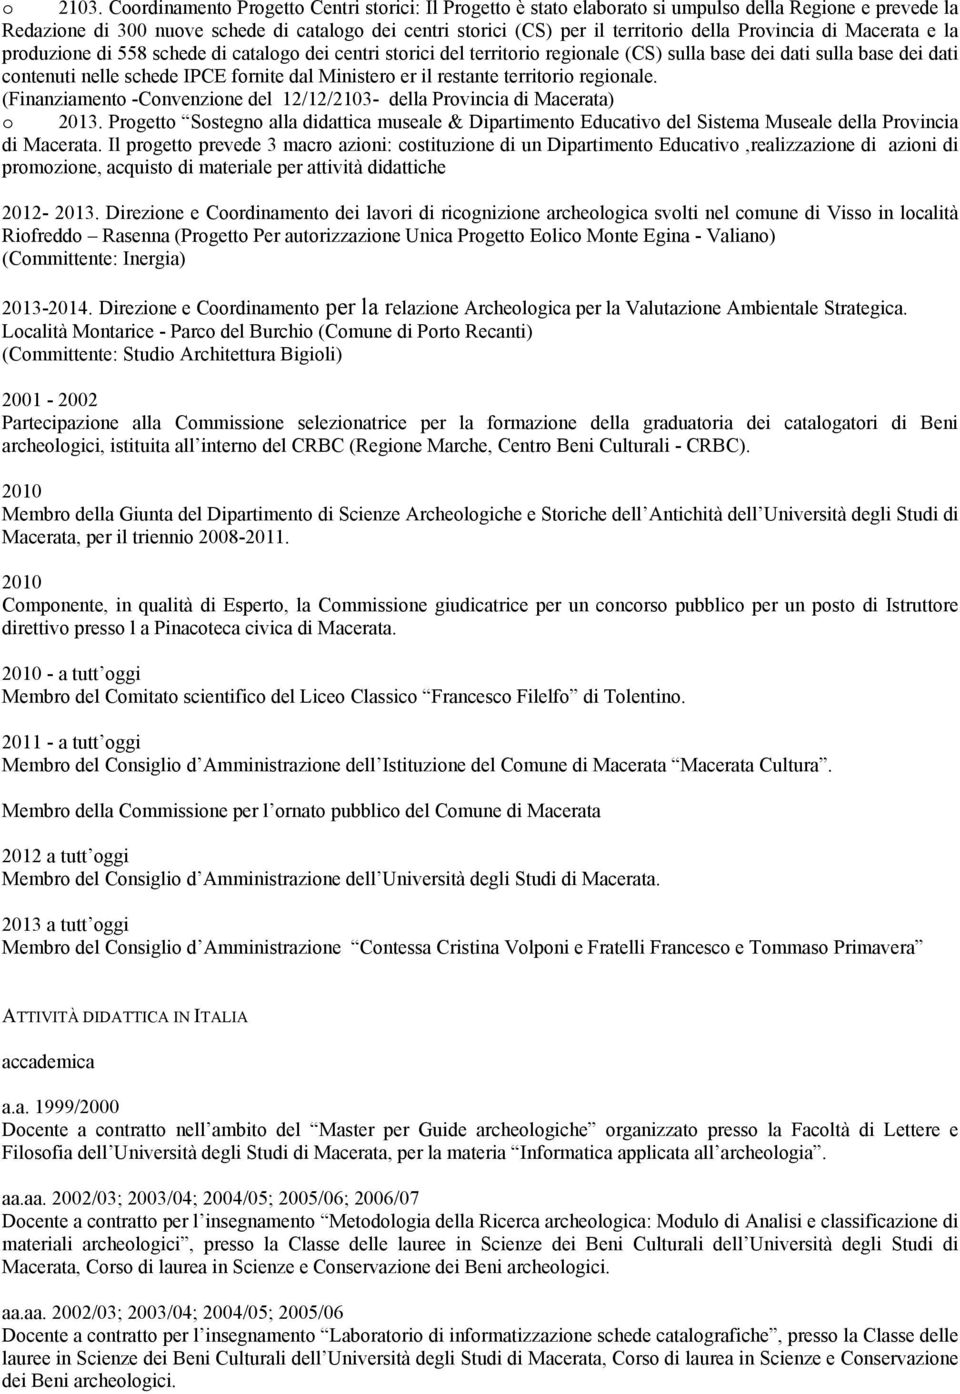 Provincia di Macerata e la produzione di 558 schede di catalogo dei centri storici del territorio regionale (CS) sulla base dei dati sulla base dei dati contenuti nelle schede IPCE fornite dal